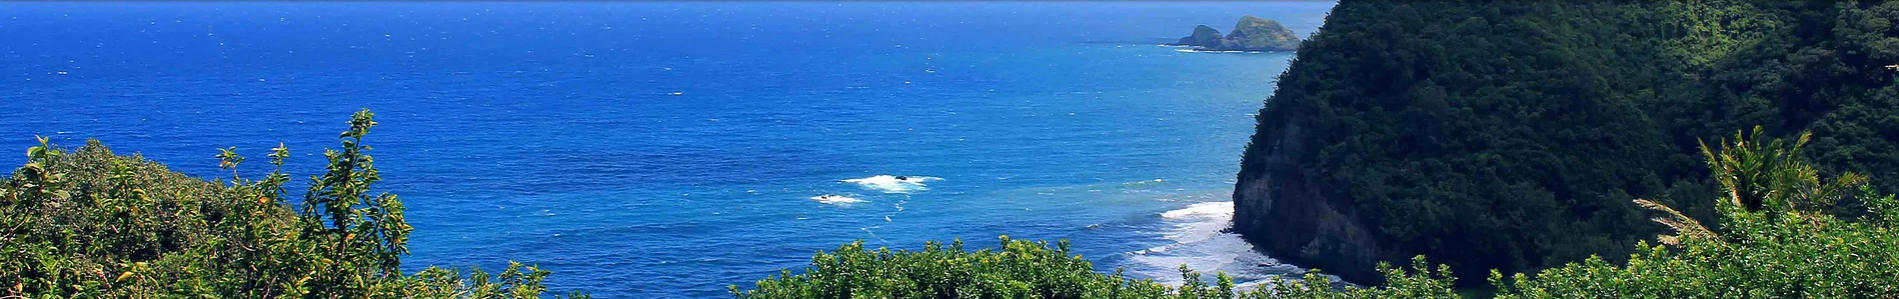 hawaii-coast